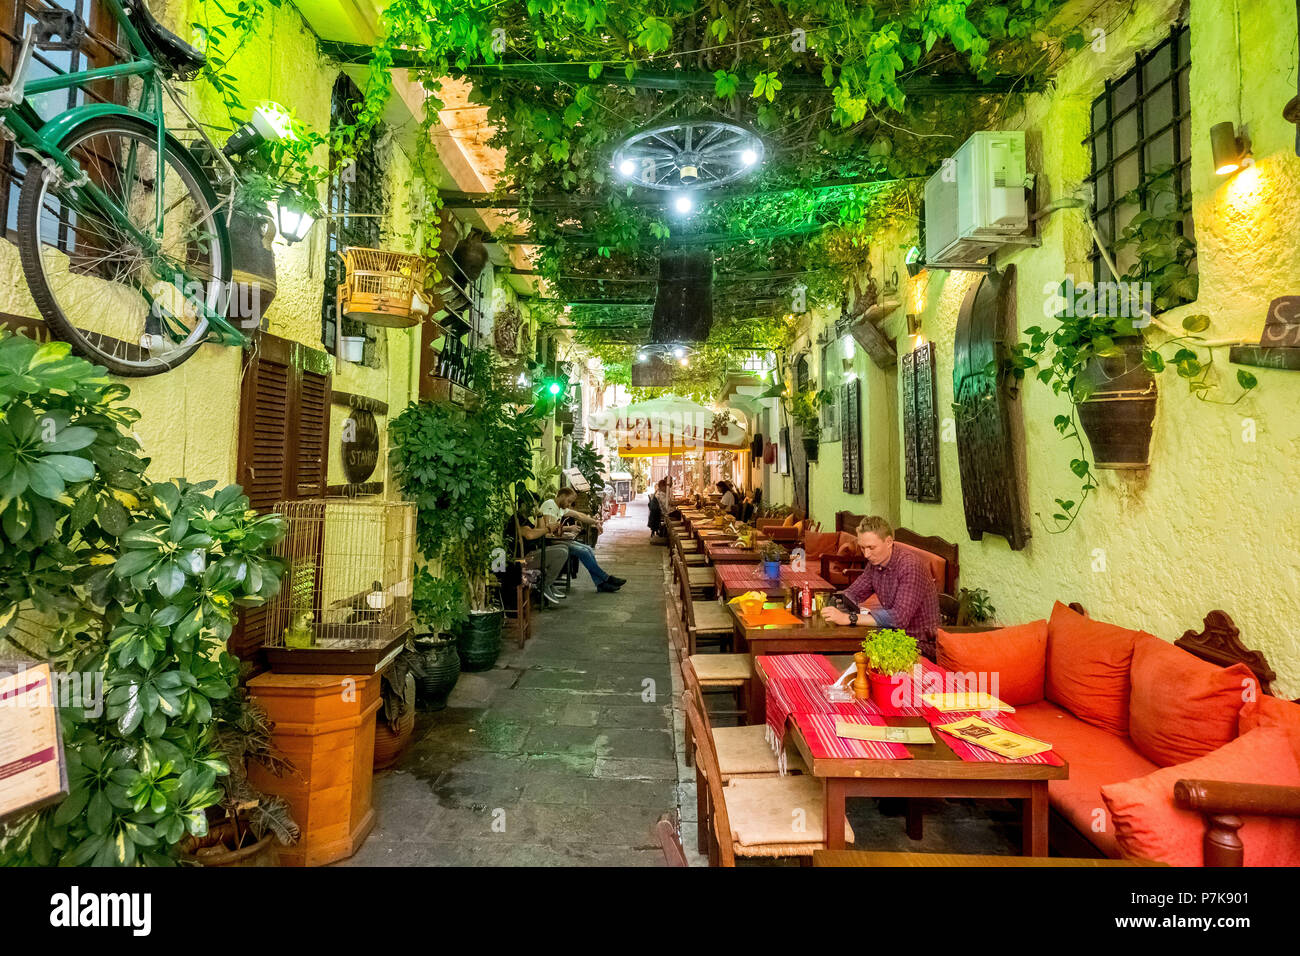 Ristorante, taverna in un vicolo nella città vecchia di Rethymno, foglie di vite e divani rossi, Europa, Creta, Grecia Foto Stock